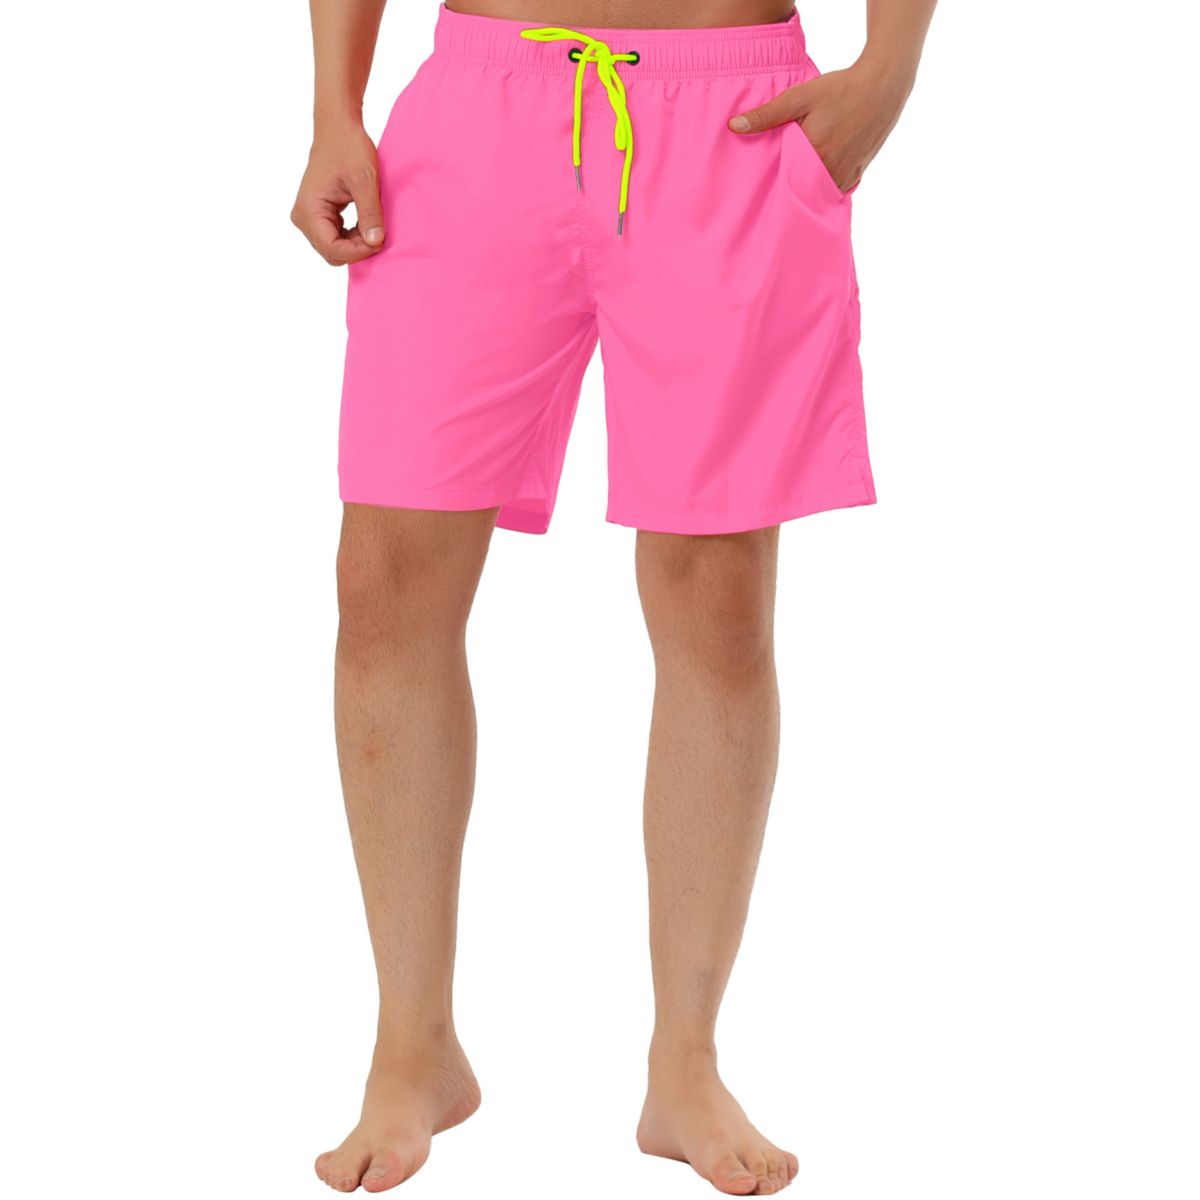 Мужские летние однотонные пляжные шорты для плавания с сетчатой подкладкой на талии и шнурком Lars Amadeus